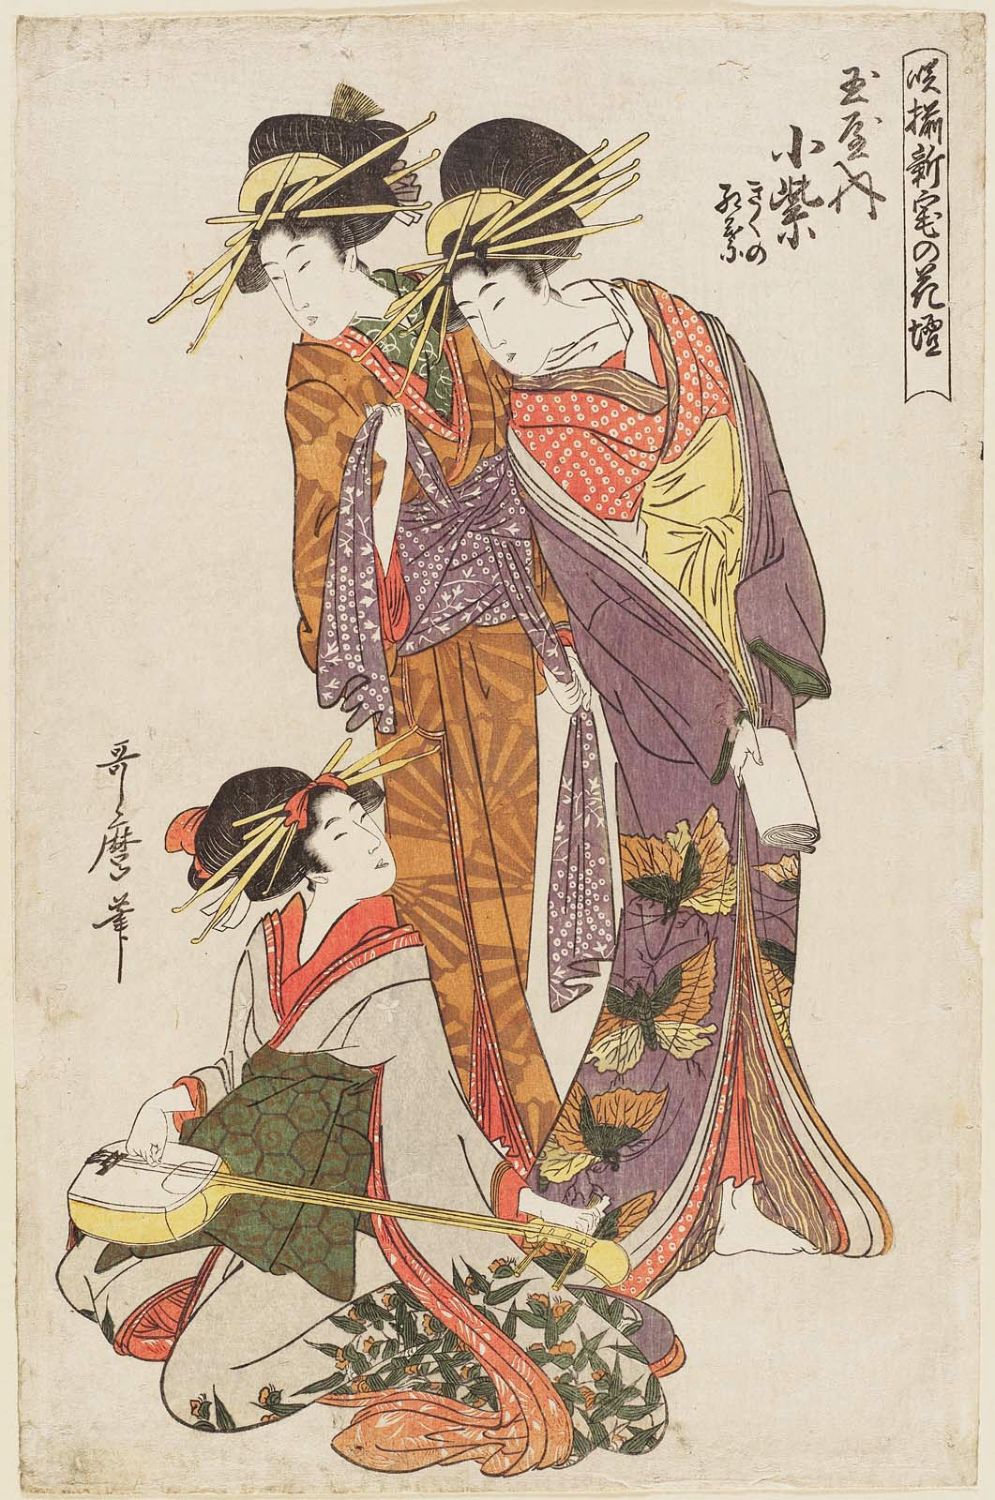 Artworks By Kitagawa Utamaro 1753 1806 1446 работ Часть 1